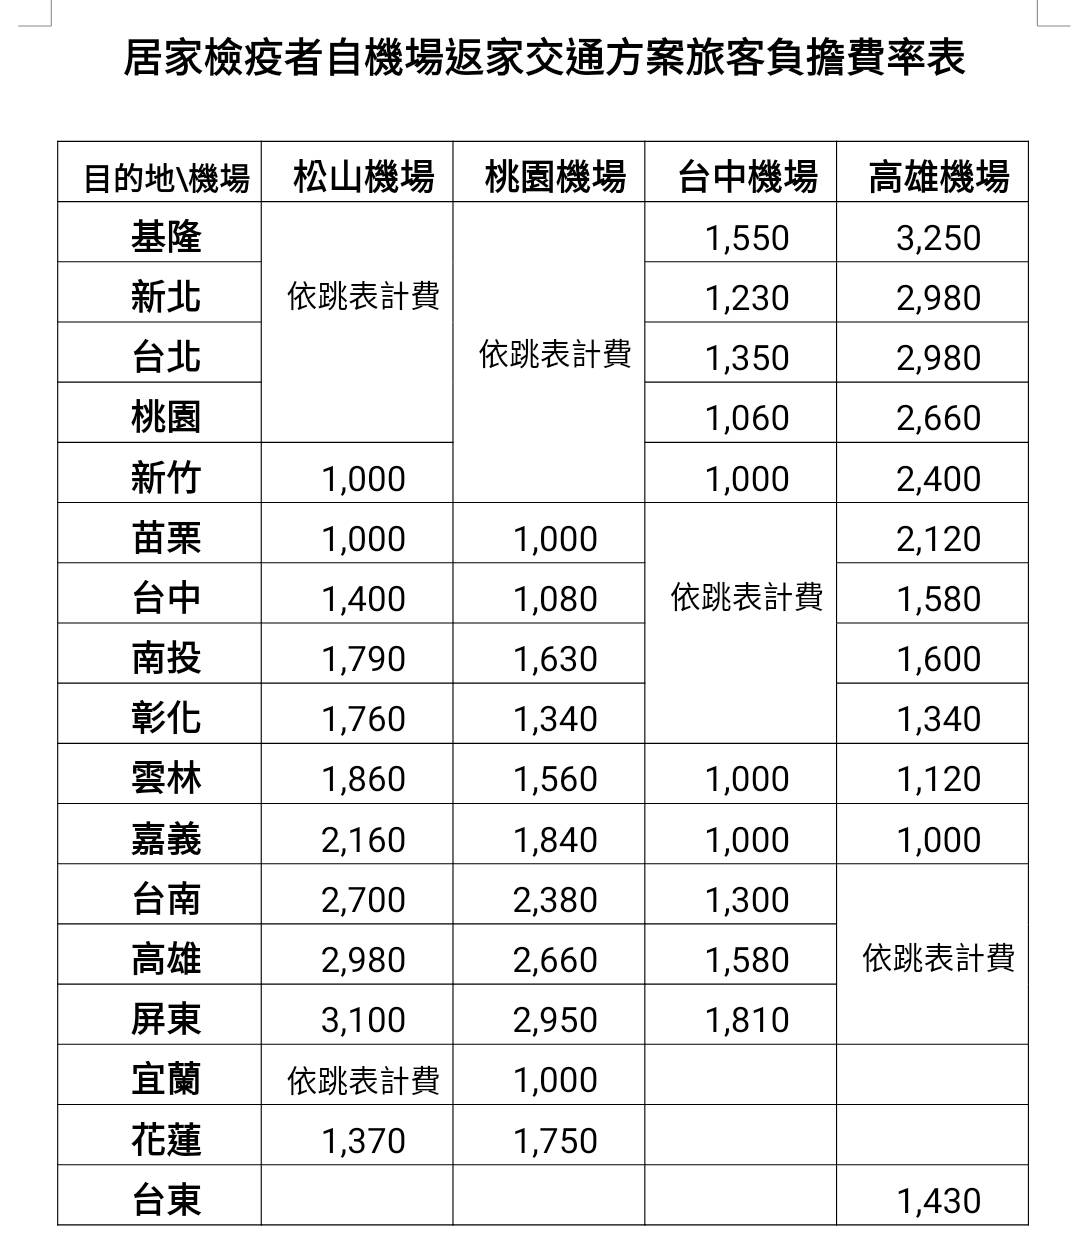 Bảng giá tiền giao thông dành cho người kiểm dịch tại nhà(chụp từ Web Bộ Giao thông) 